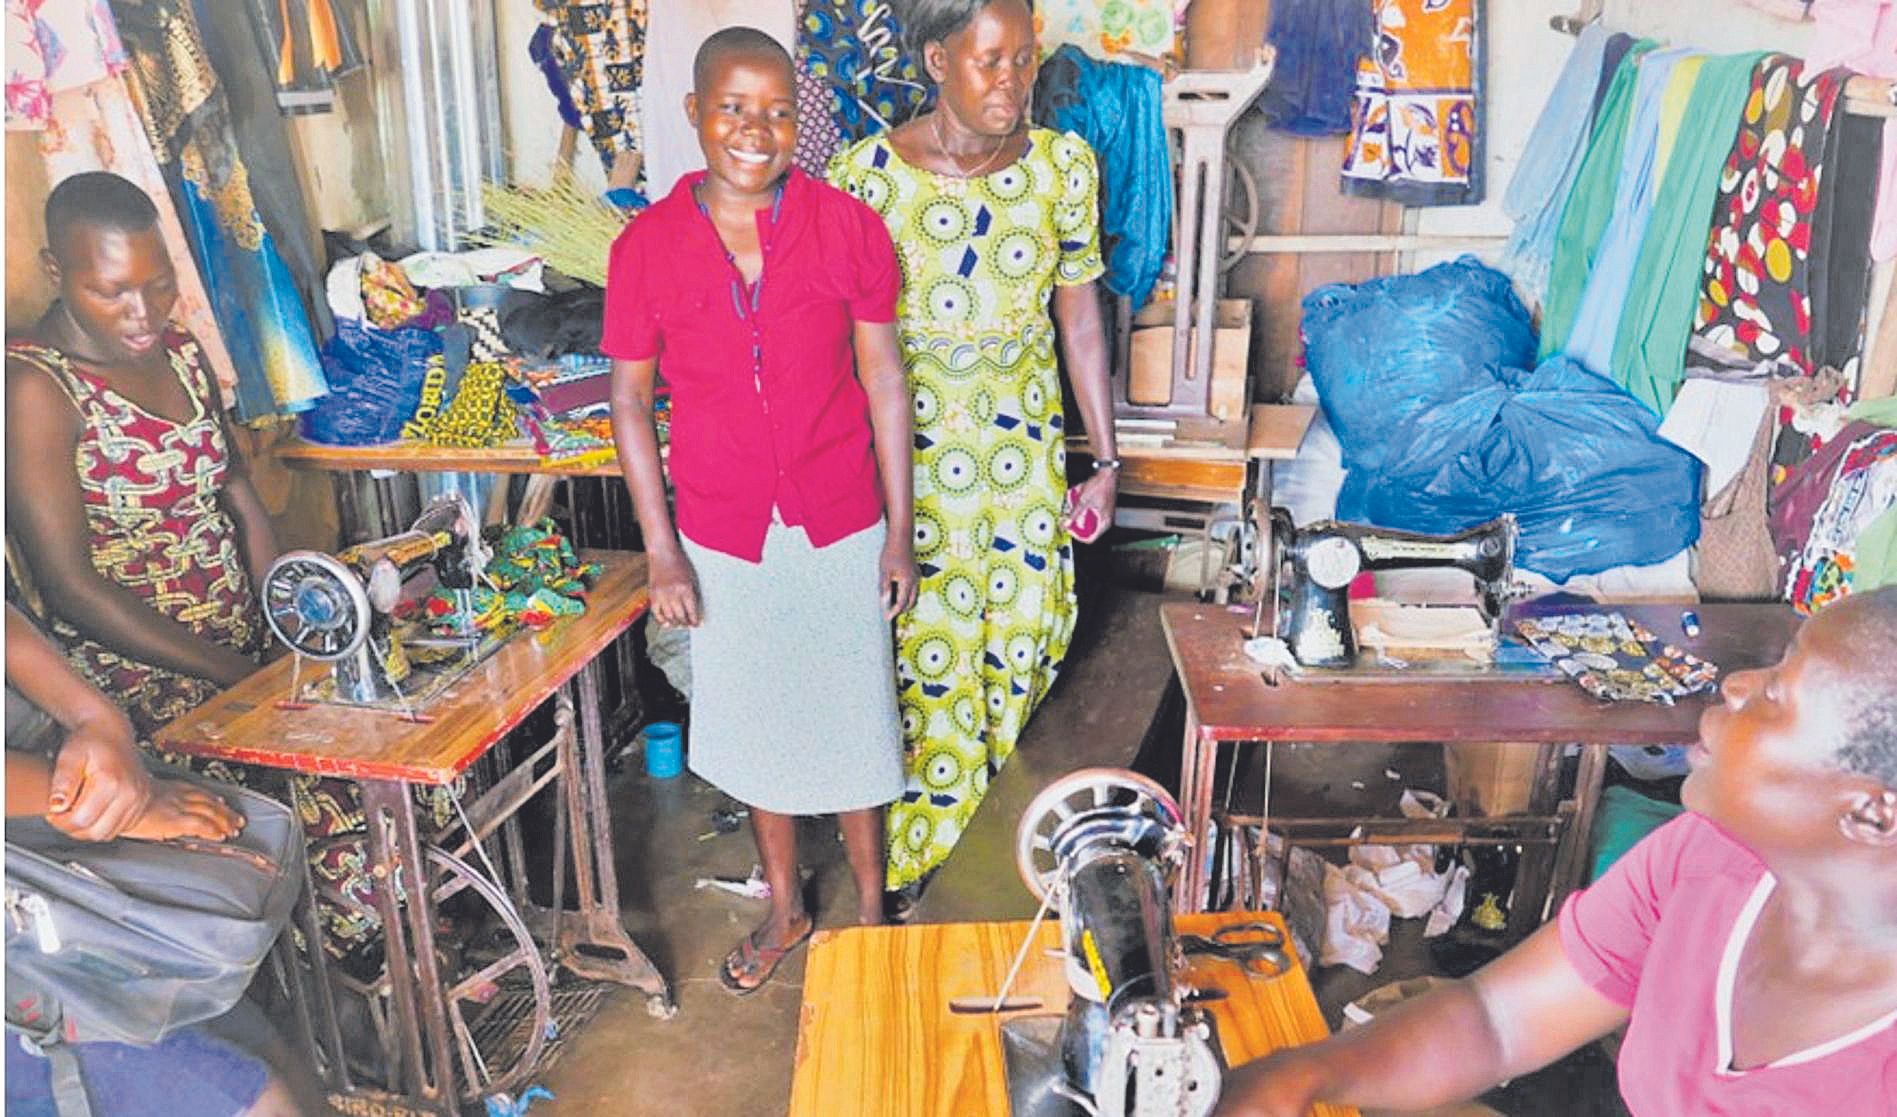 Mujeres cosiendo las pieles y zapatos en el proyecto de intervenciones para el desarrollo económico.